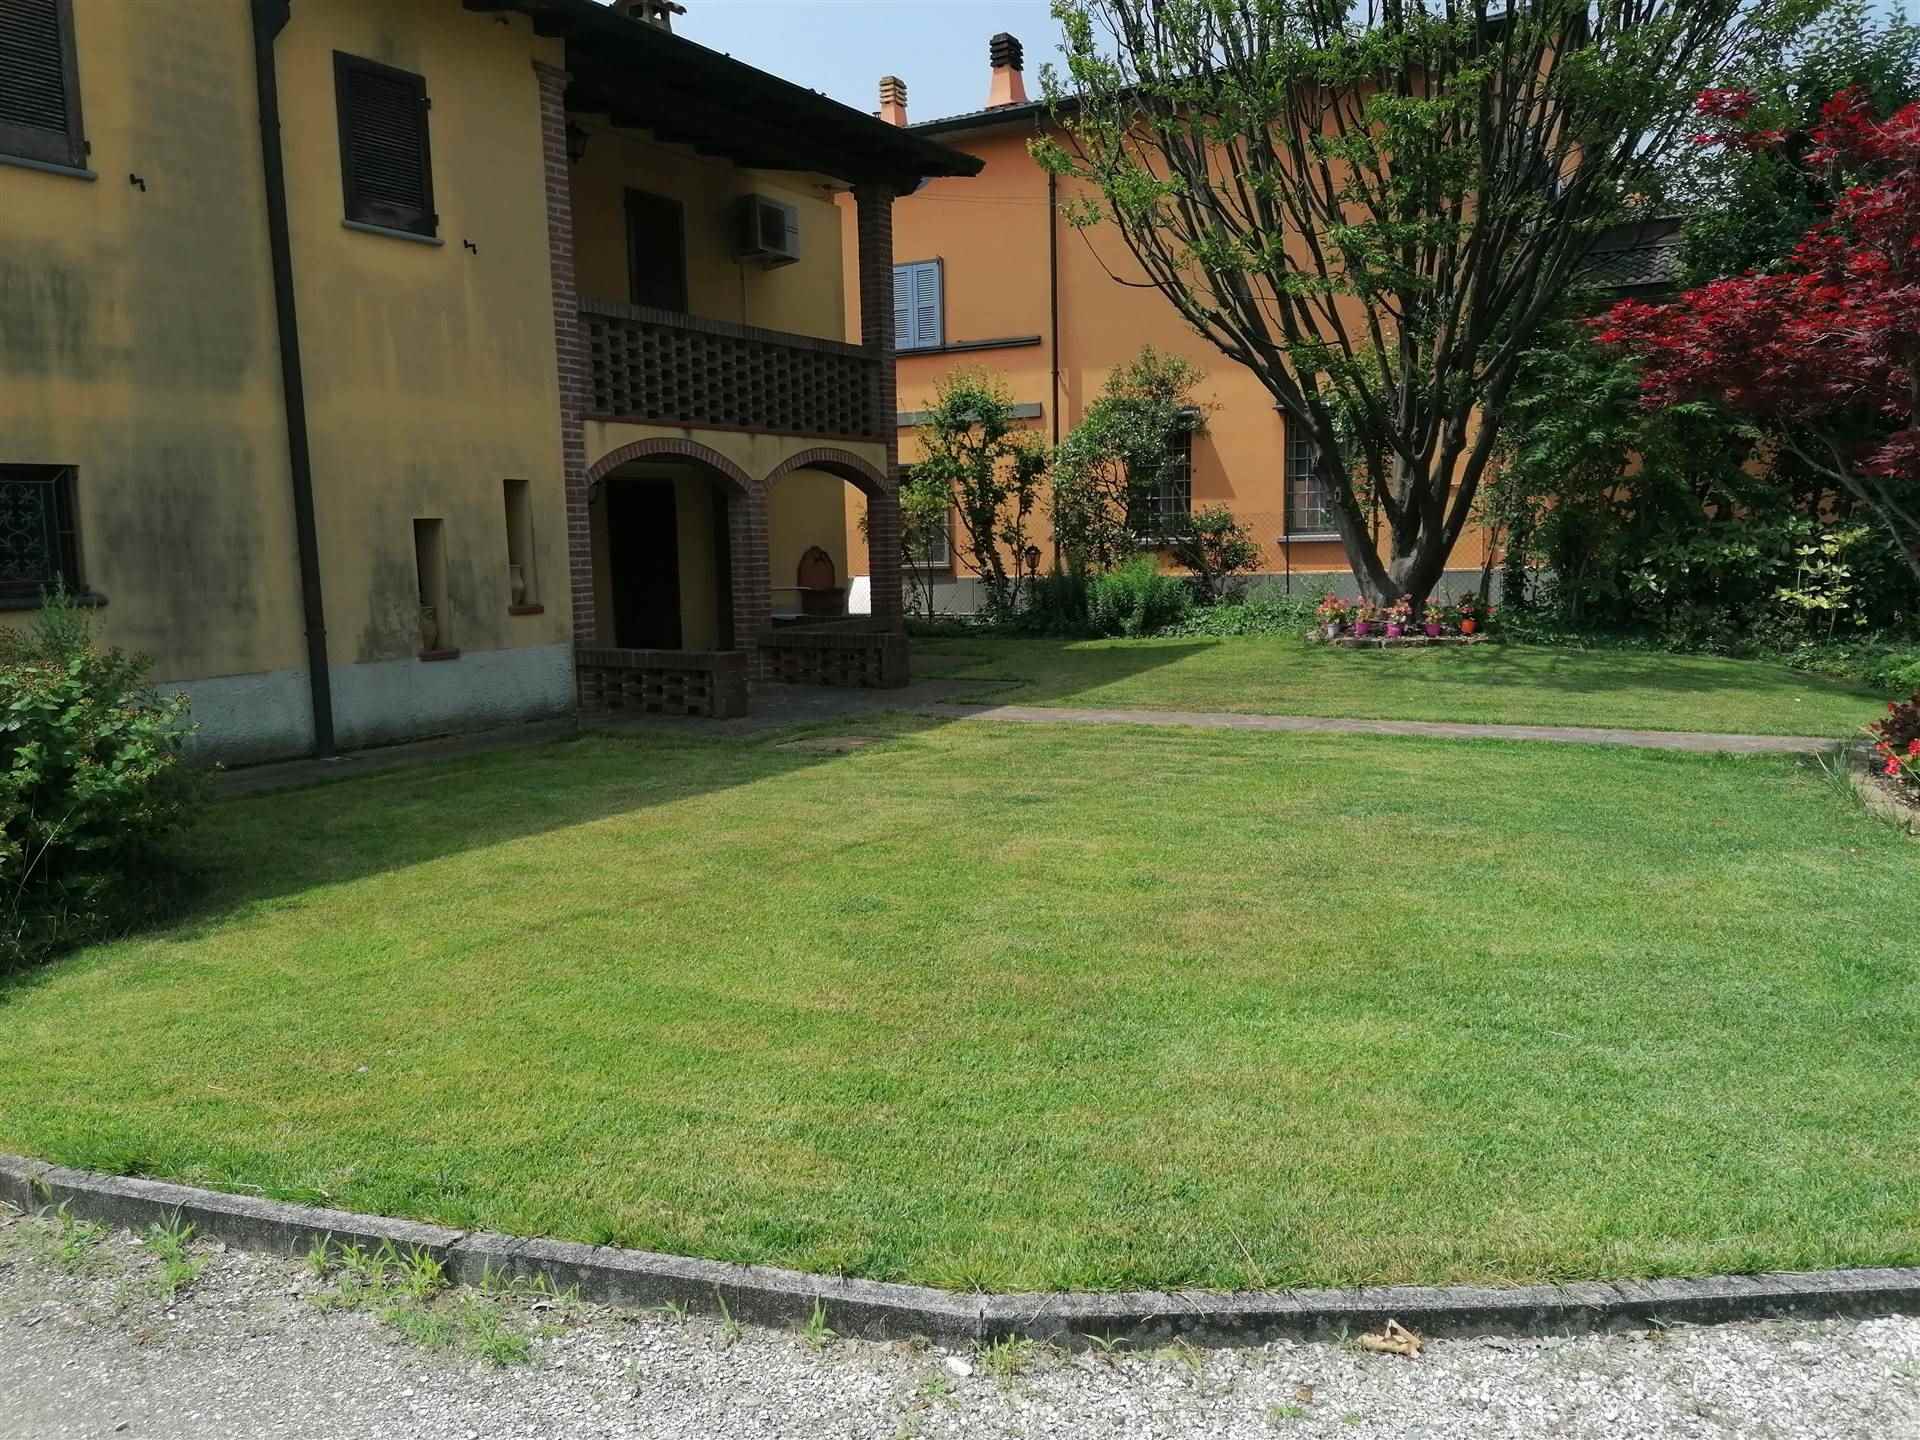 Villa in vendita a Monticelli d'Ongina, 8 locali, zona role, prezzo € 250.000 | PortaleAgenzieImmobiliari.it